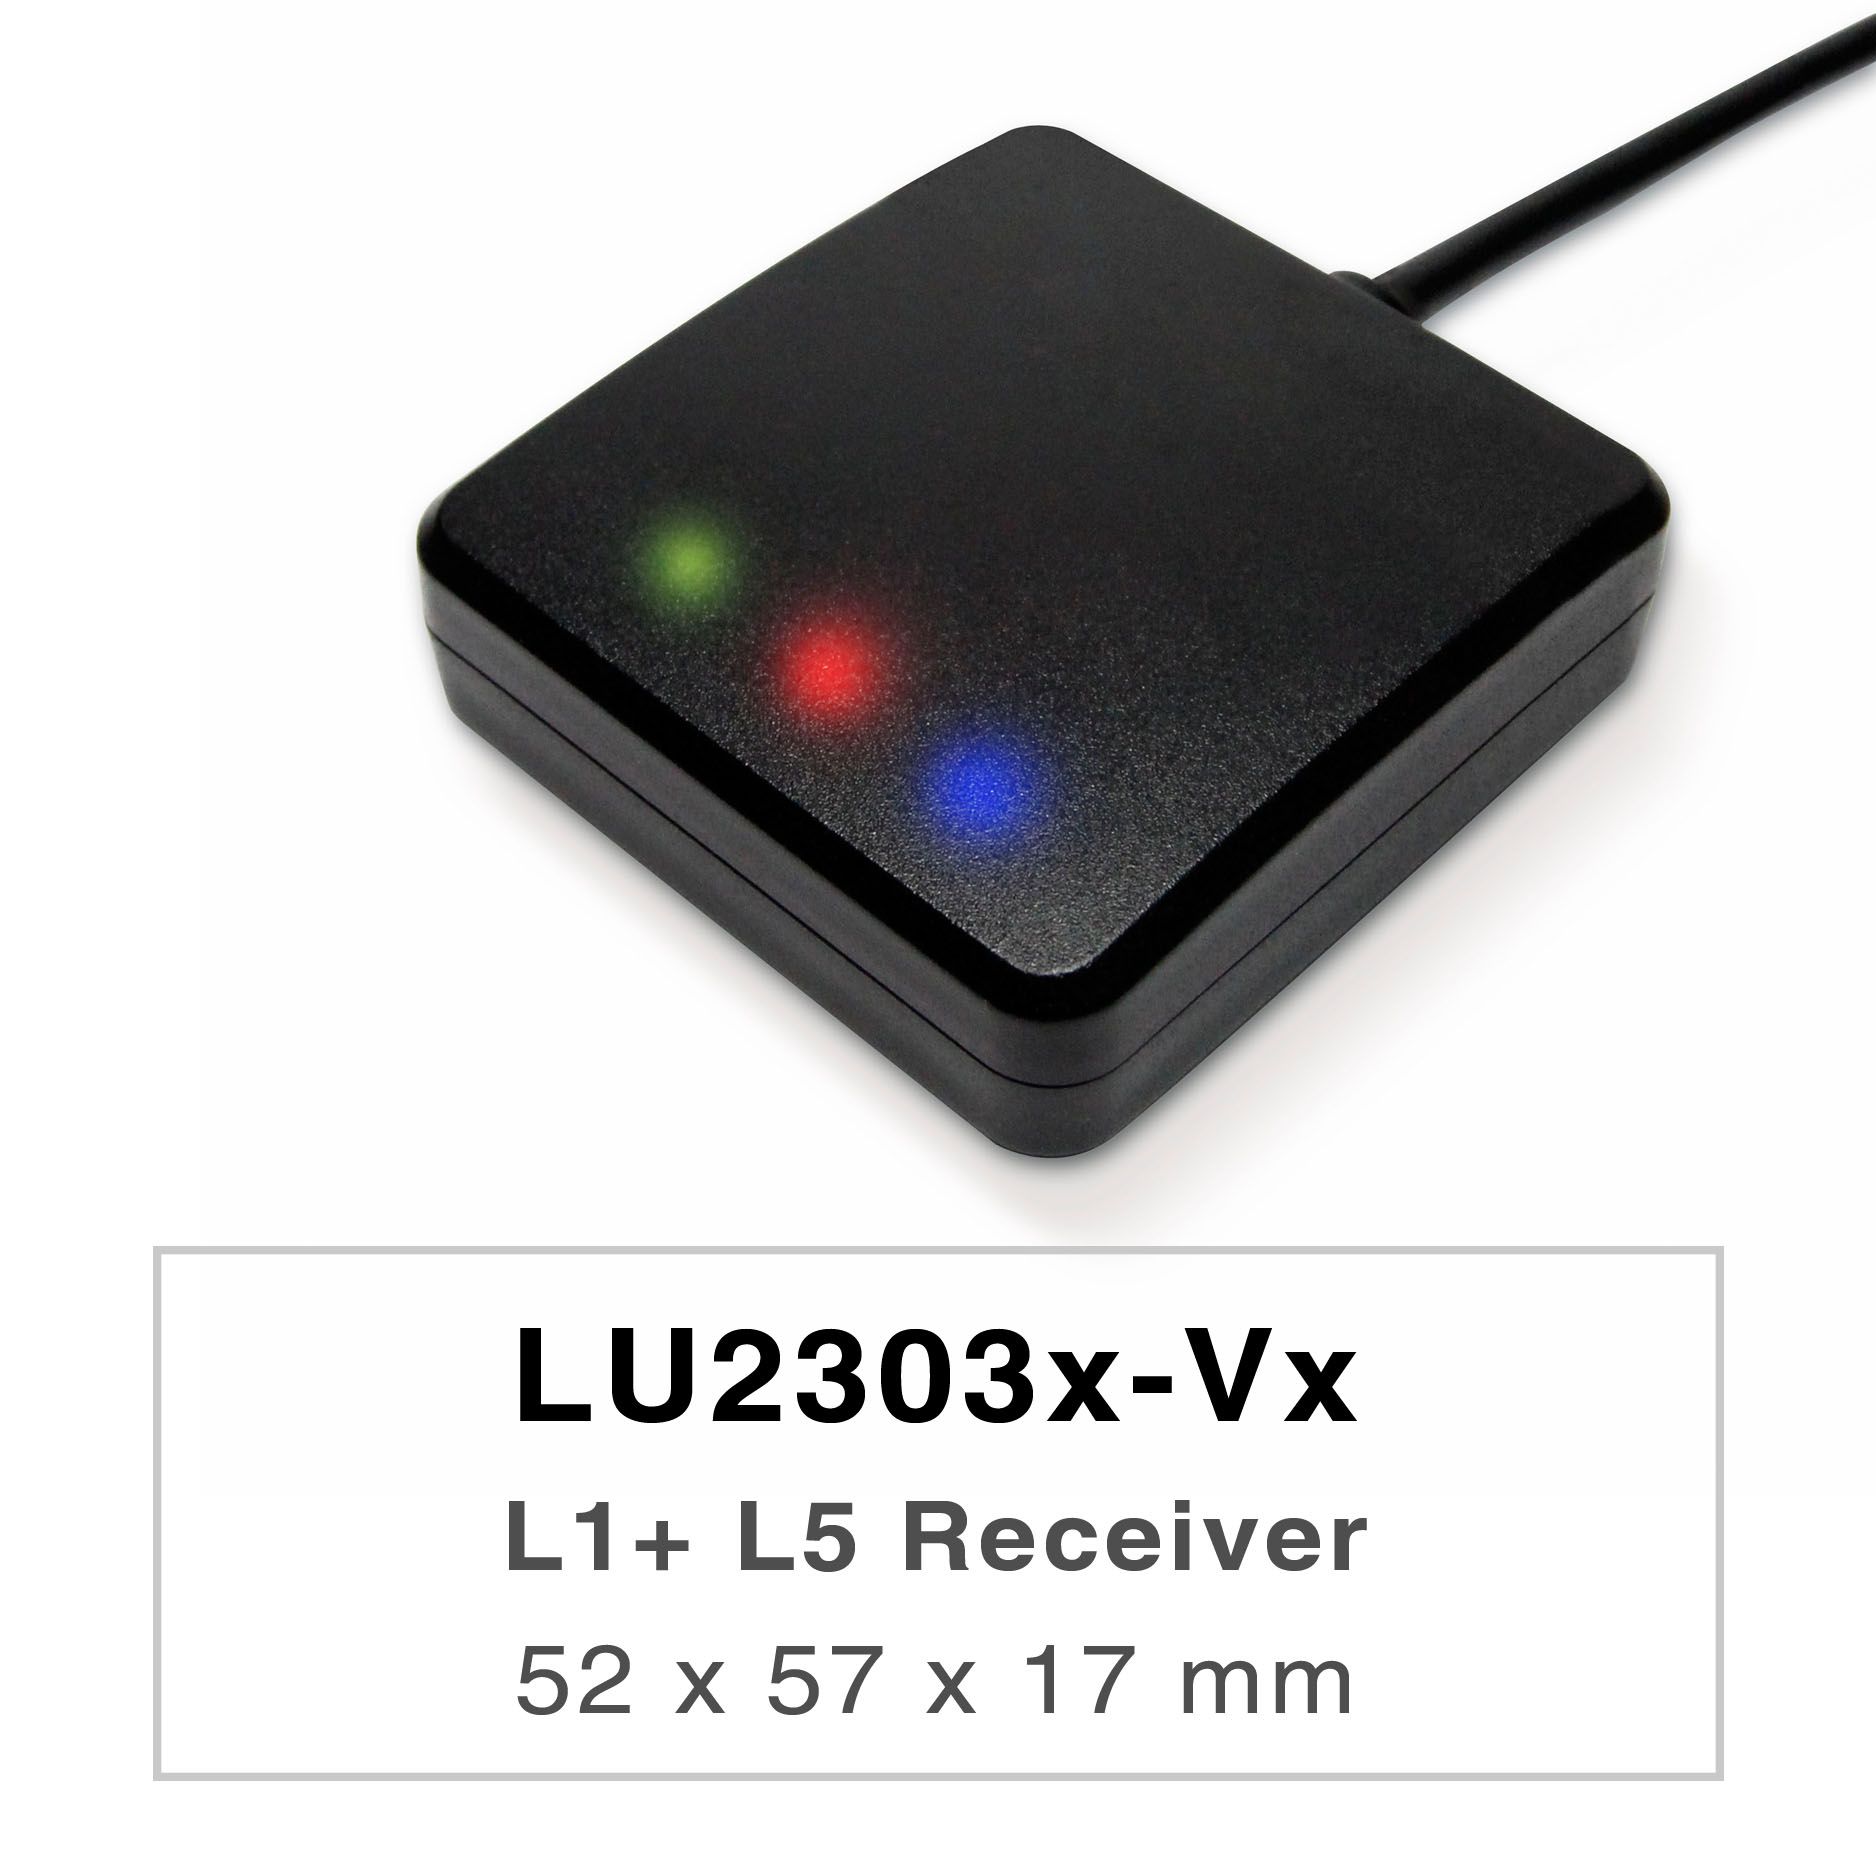 LU2303x-Vxシリーズの製品は、高性能なデュアルバンドGNSSレシーバー（または
GNSSマウス）であり、すべてのグローバル民間航法システム（GPS、GLONASS、
BDS、GALILEO、QZSS、IRNSS）を追跡することができます。